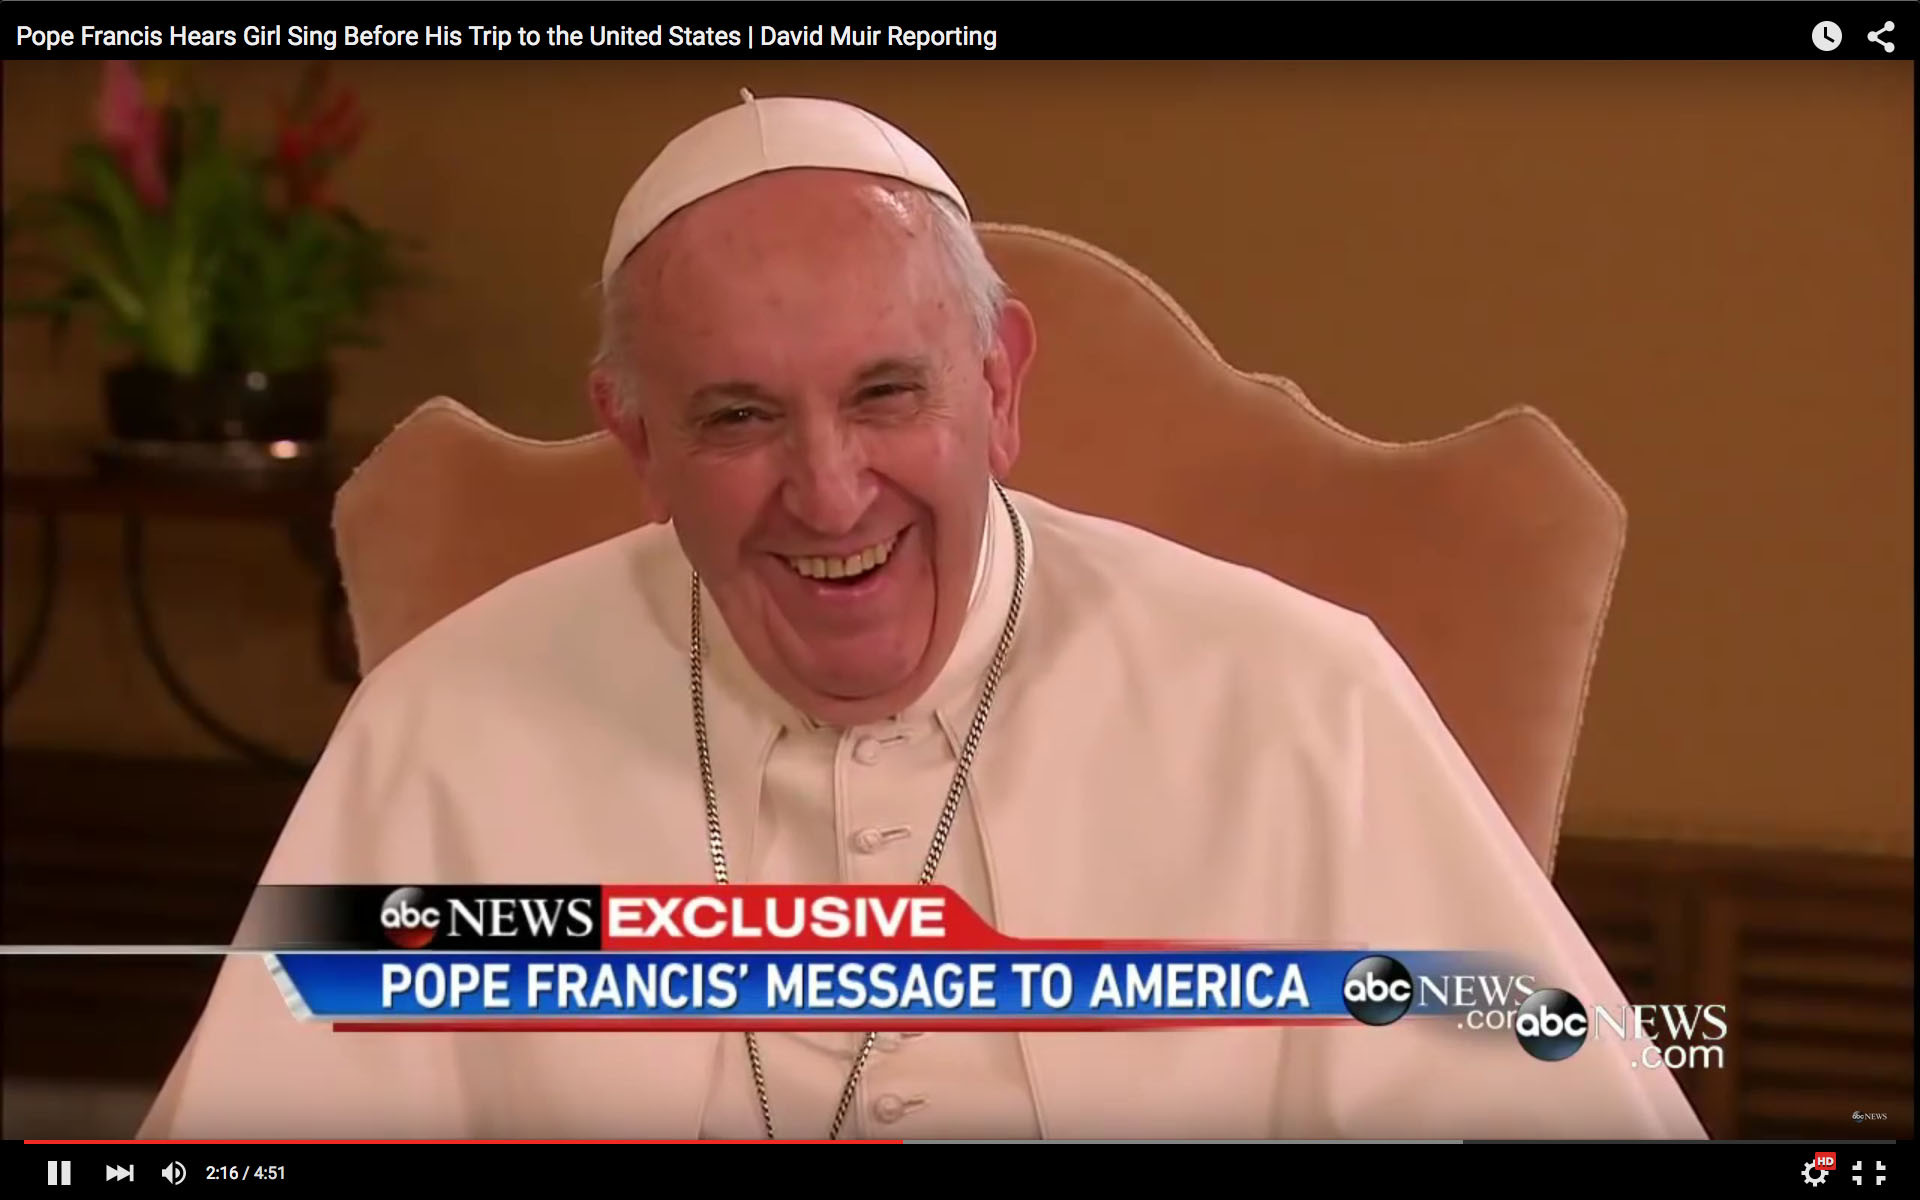 A deux semaines de sa visite aux Etats-Unis, le pape a dialogué avec des américains (Photo: capture écran)